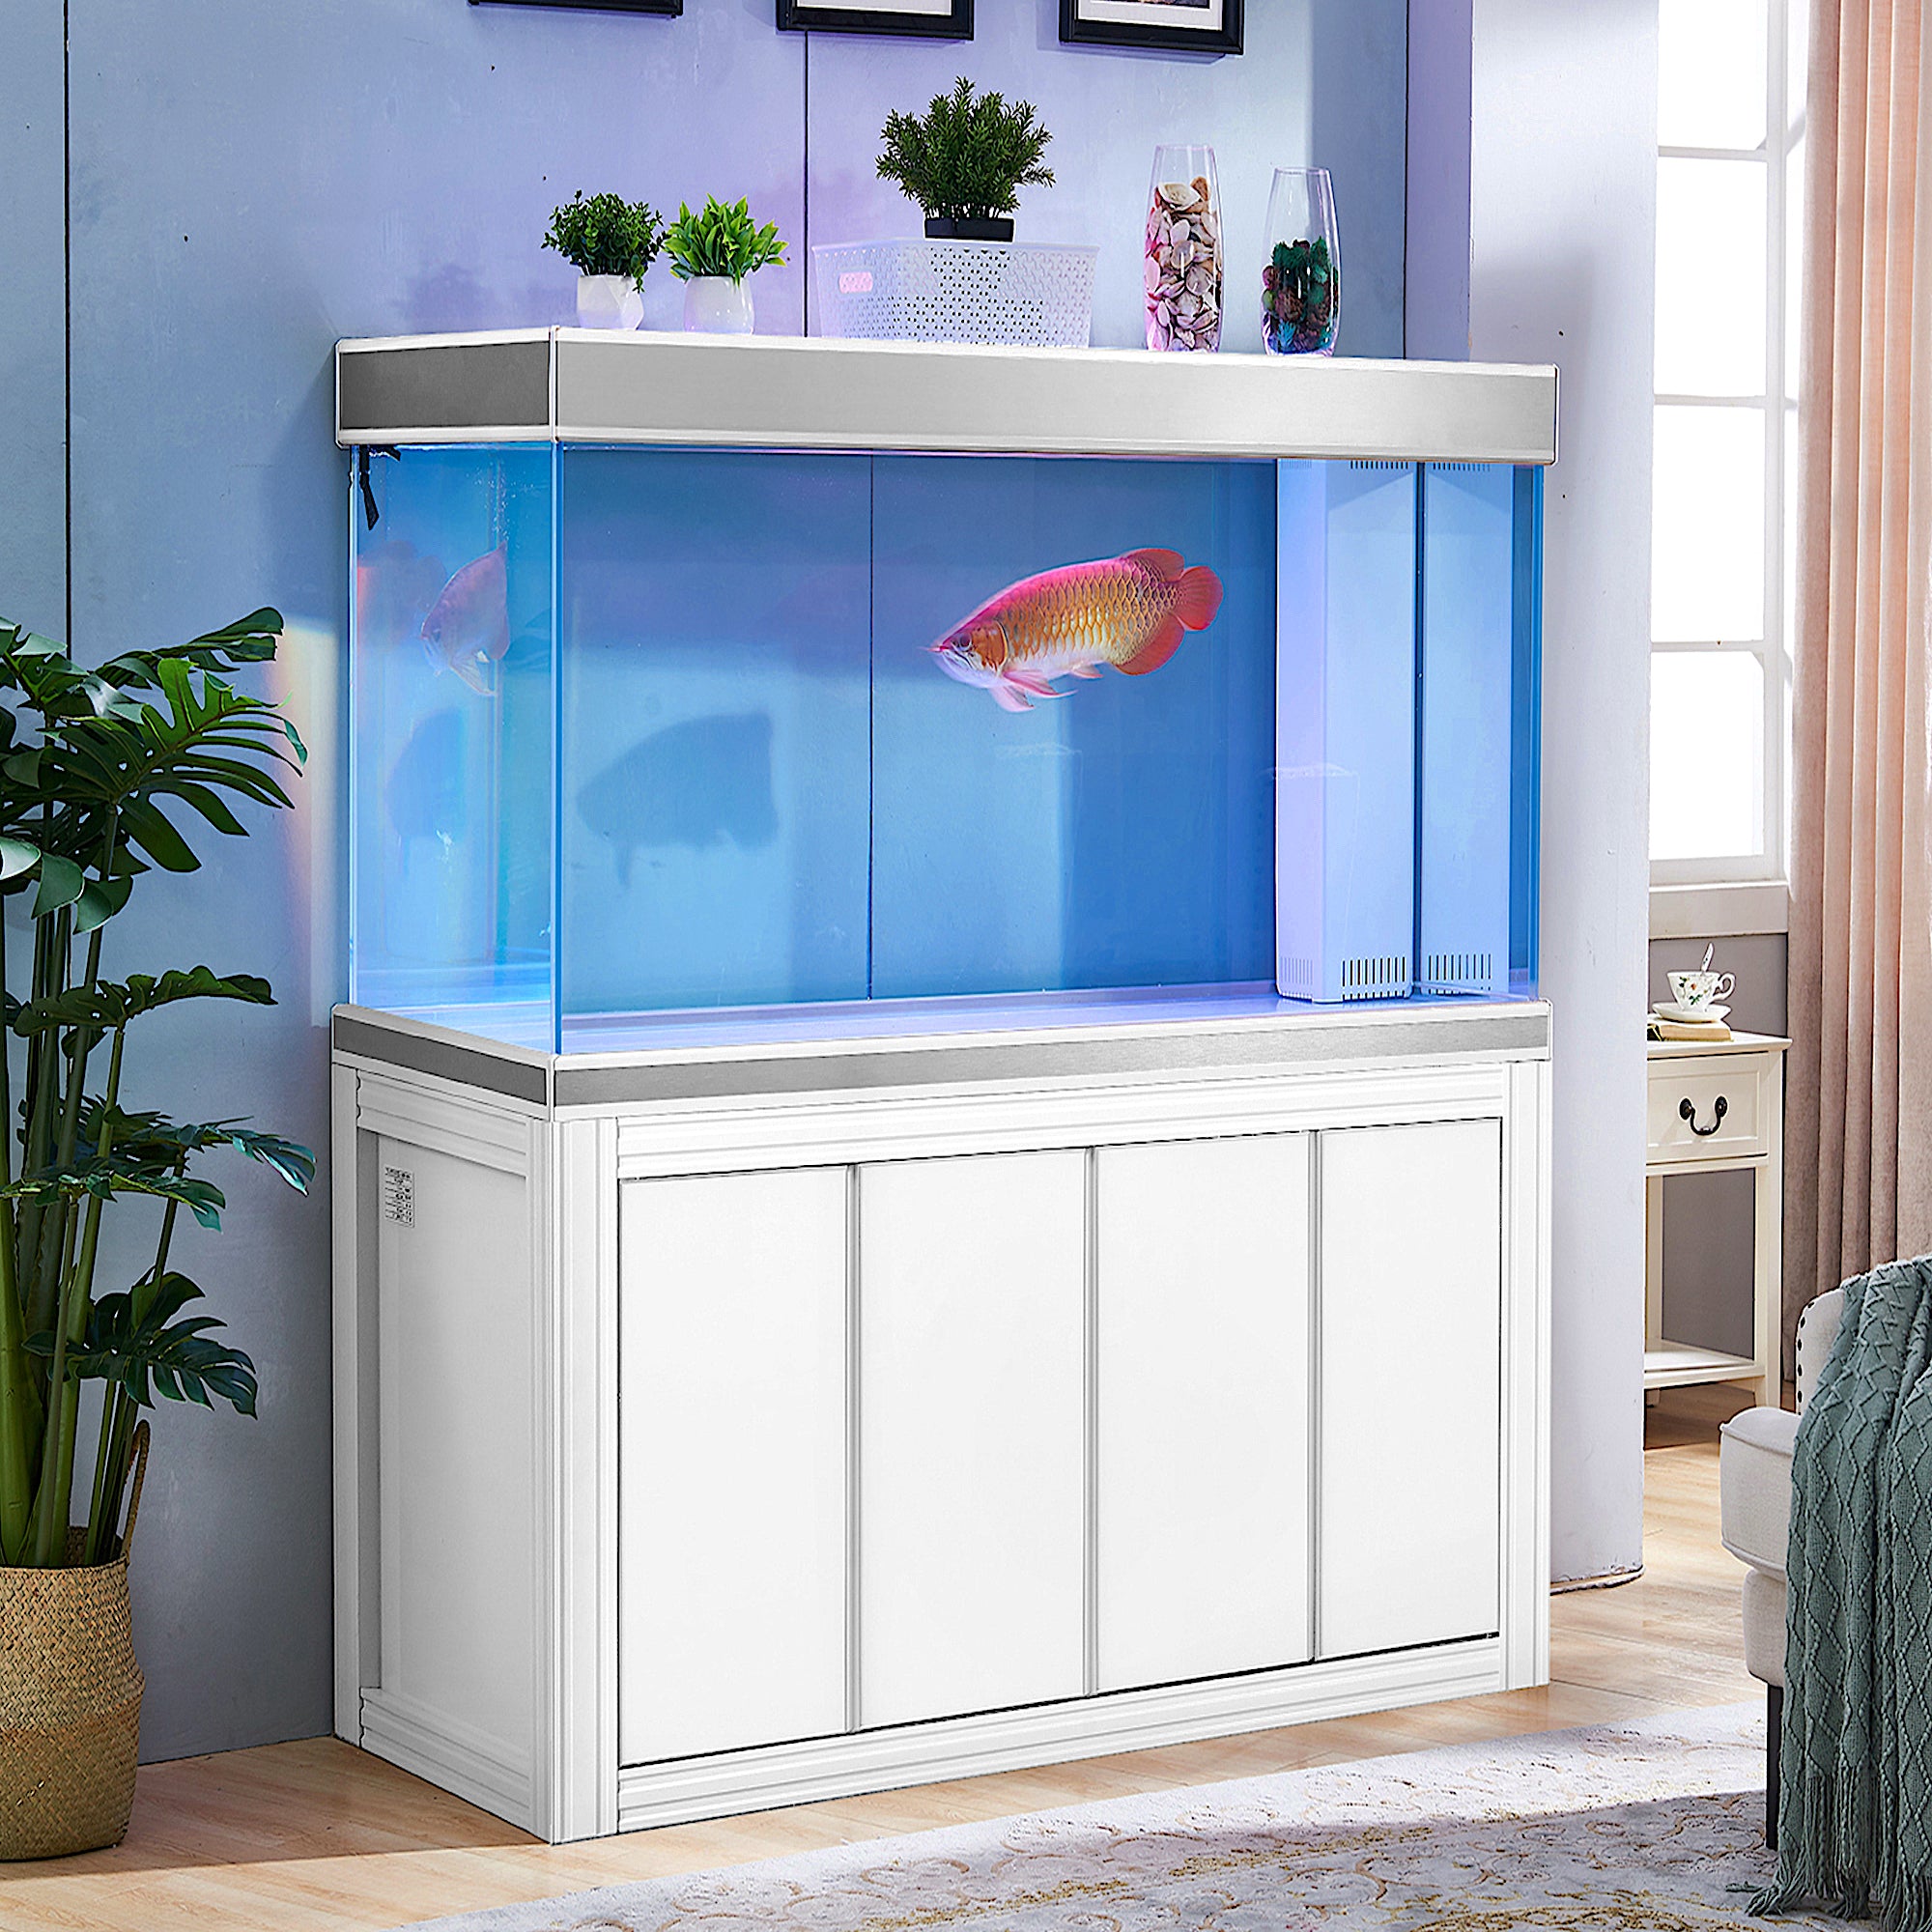 Aqua Dream Tempered Glass Aquarium 260 Gallon Fish Tank White and Silver